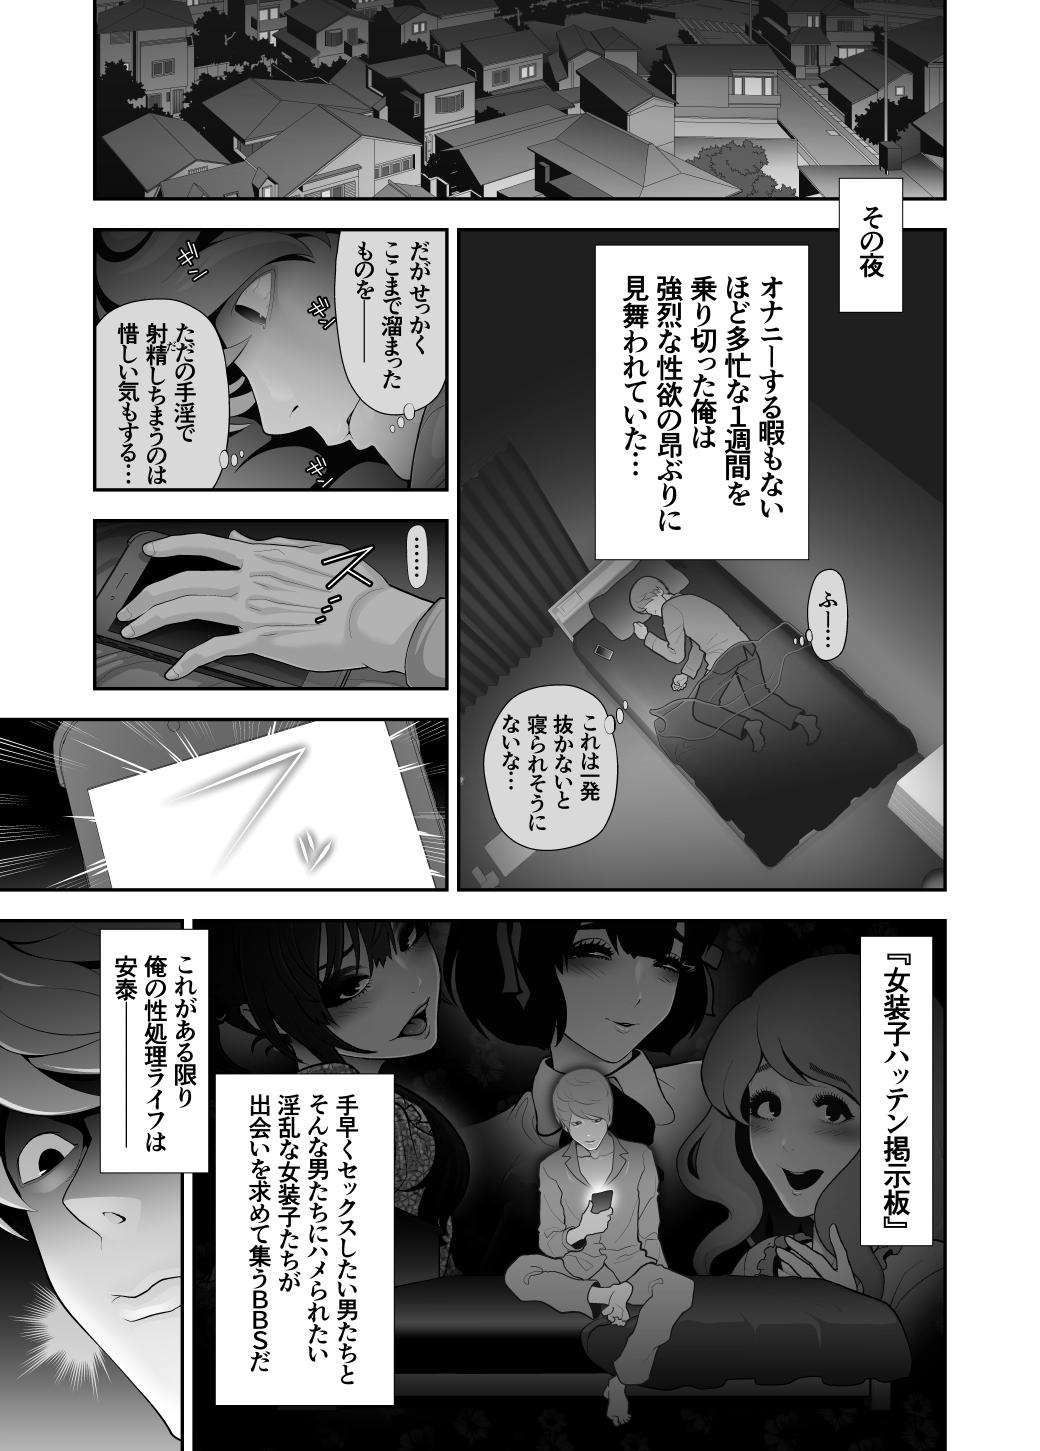 Moreno 女装子ハッテン系 ≪ ド○キ屋上 篇 ≫ Romantic - Page 3